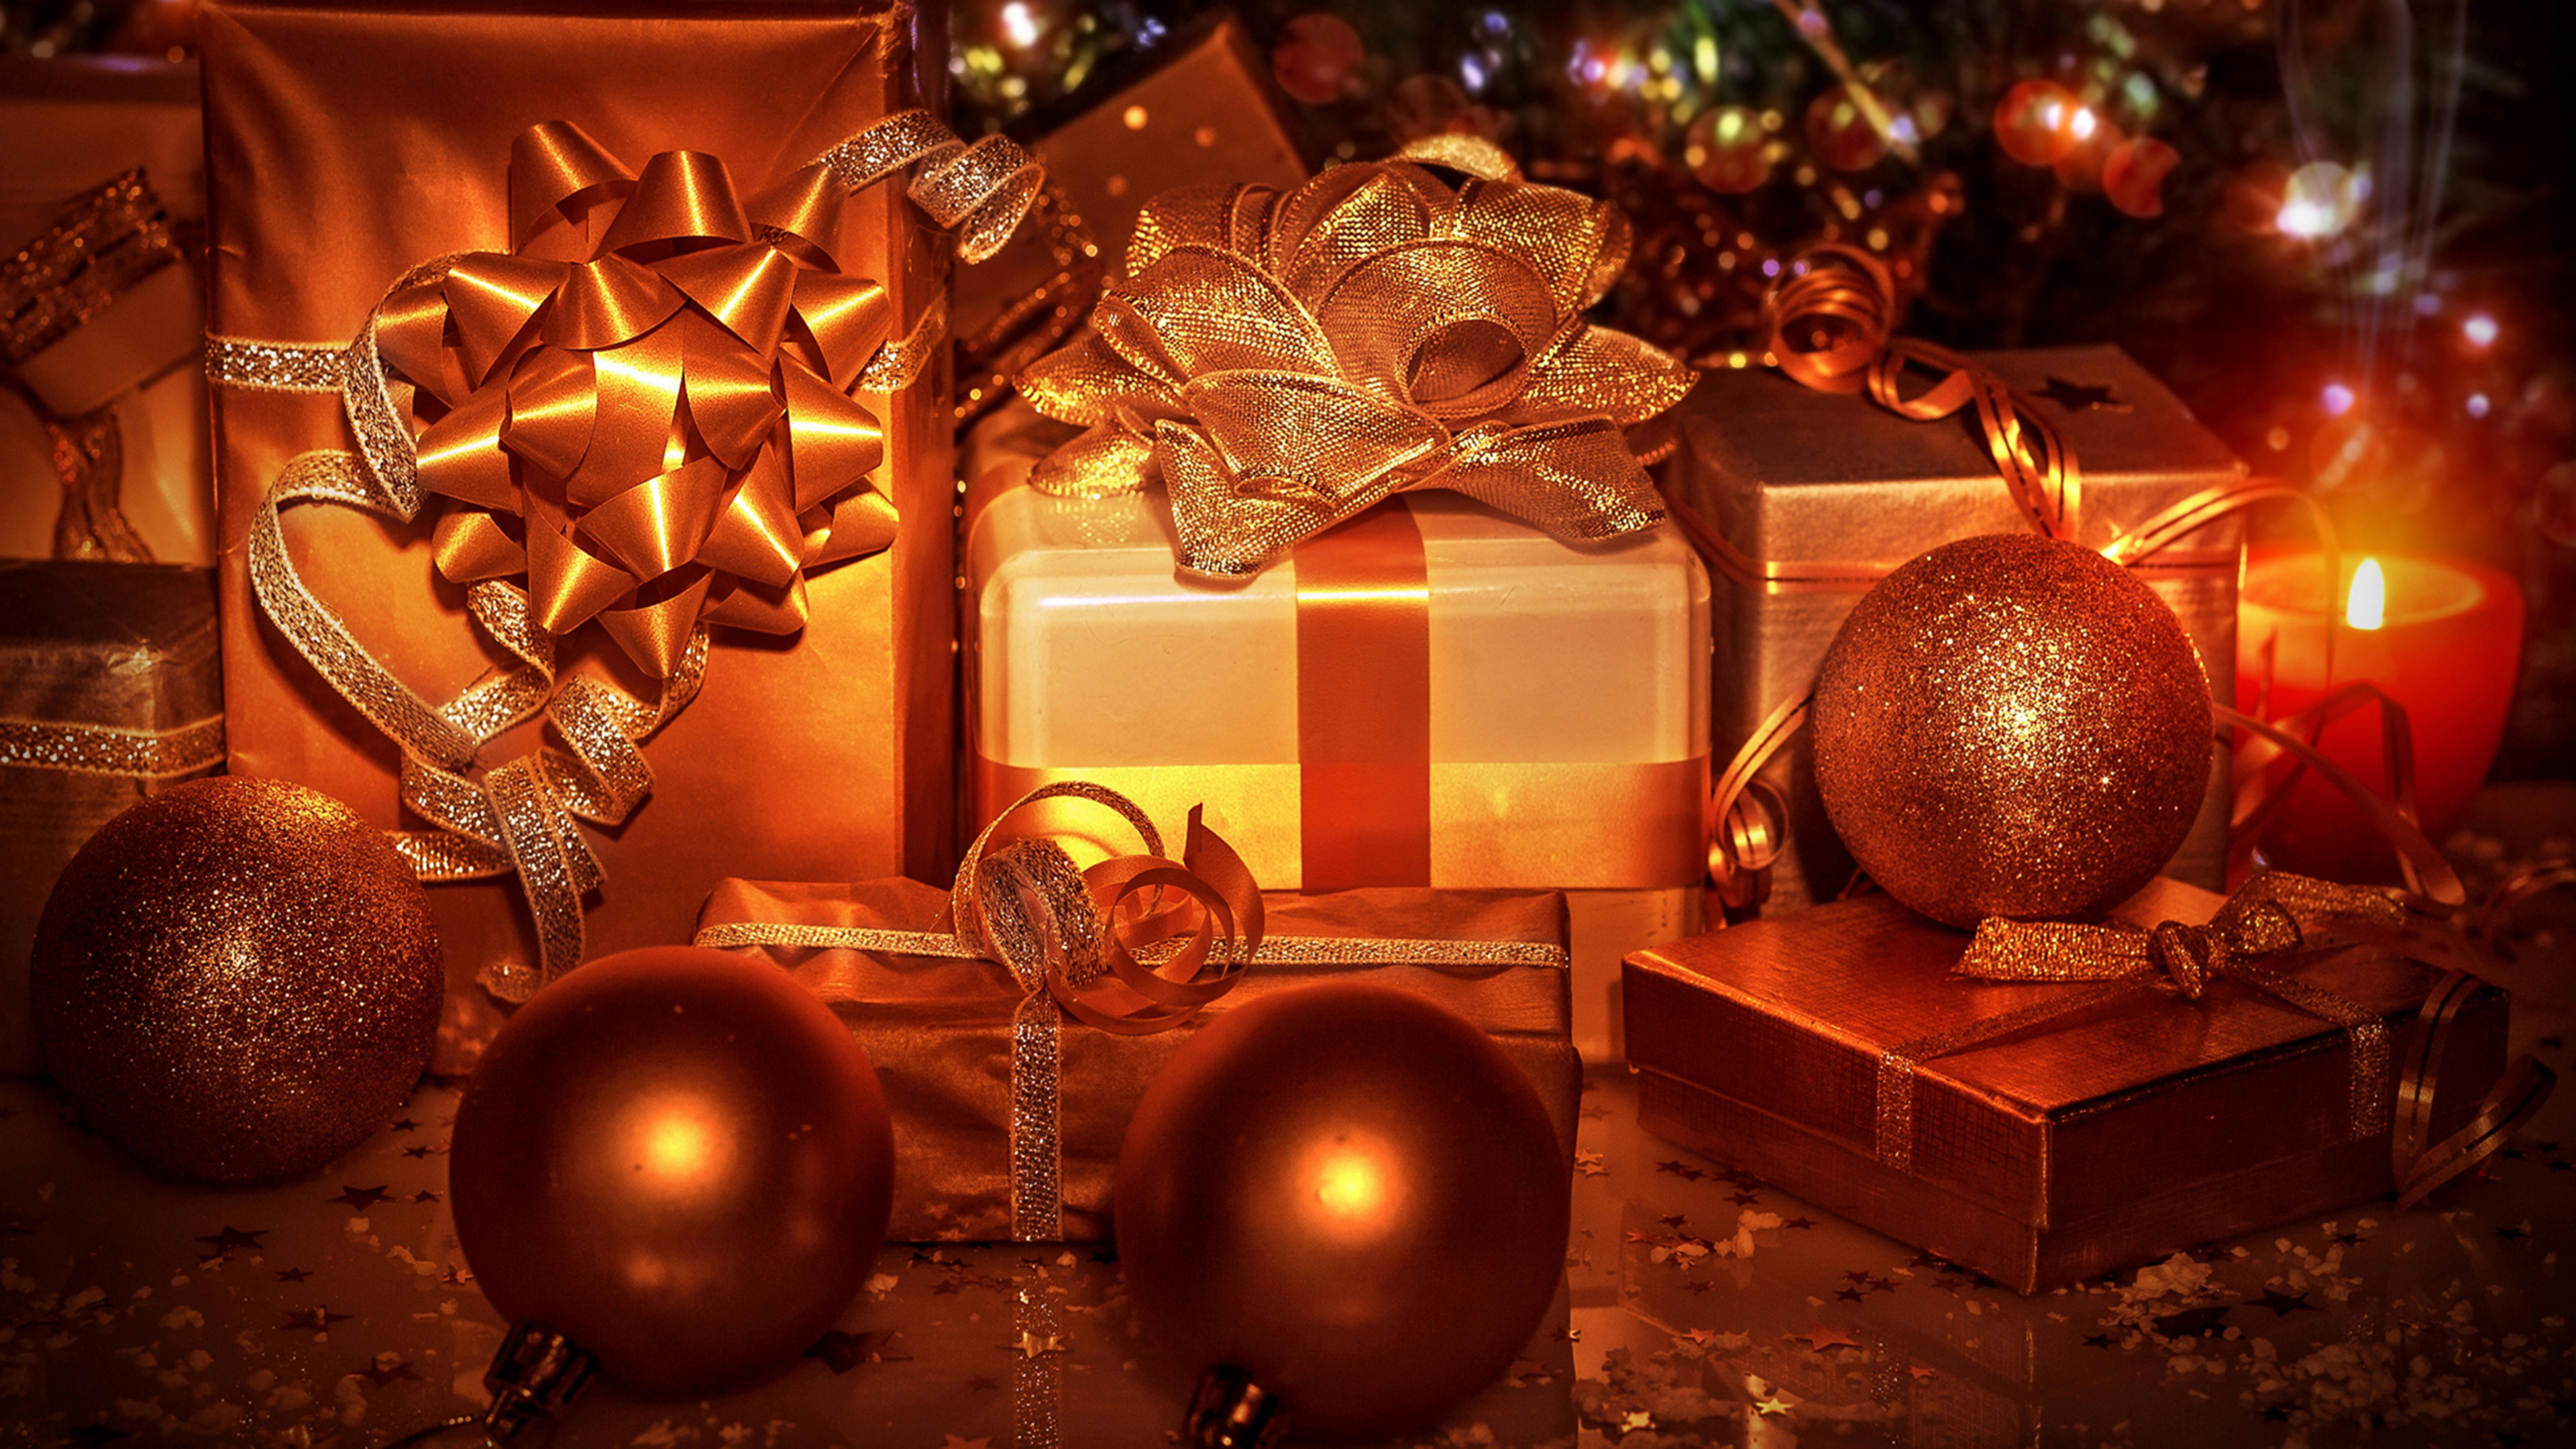 Le Jour De Noël, Ornement de Noël, Arbre de Noël, Cadeau de Noël, Décoration de Noël. Wallpaper in 3840x2160 Resolution